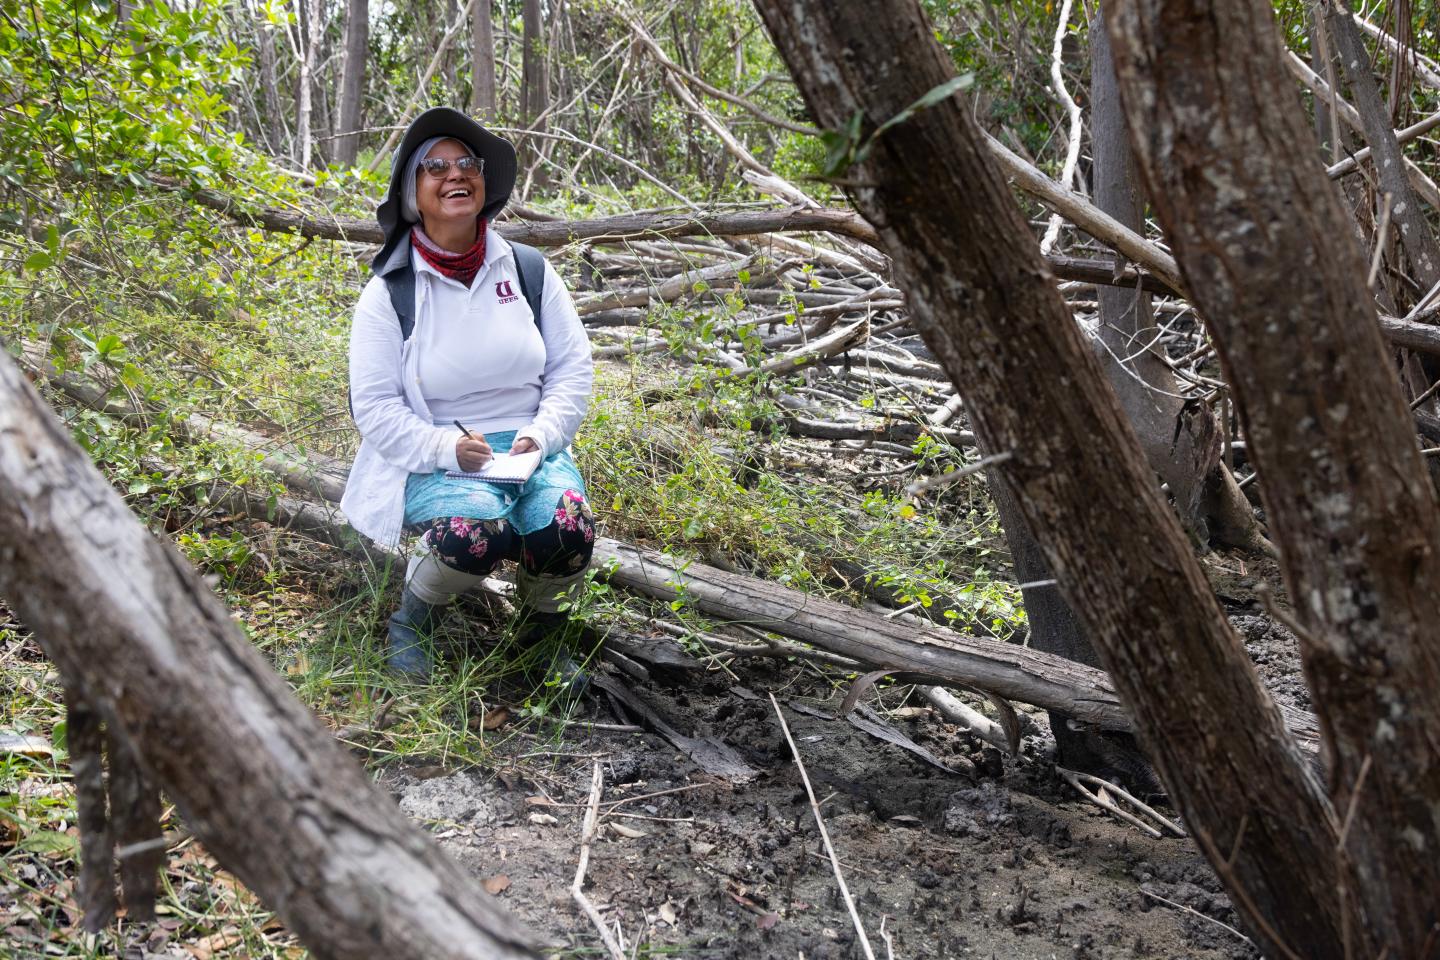 Dr. Natalia Molina looks up at a mangrove smiling